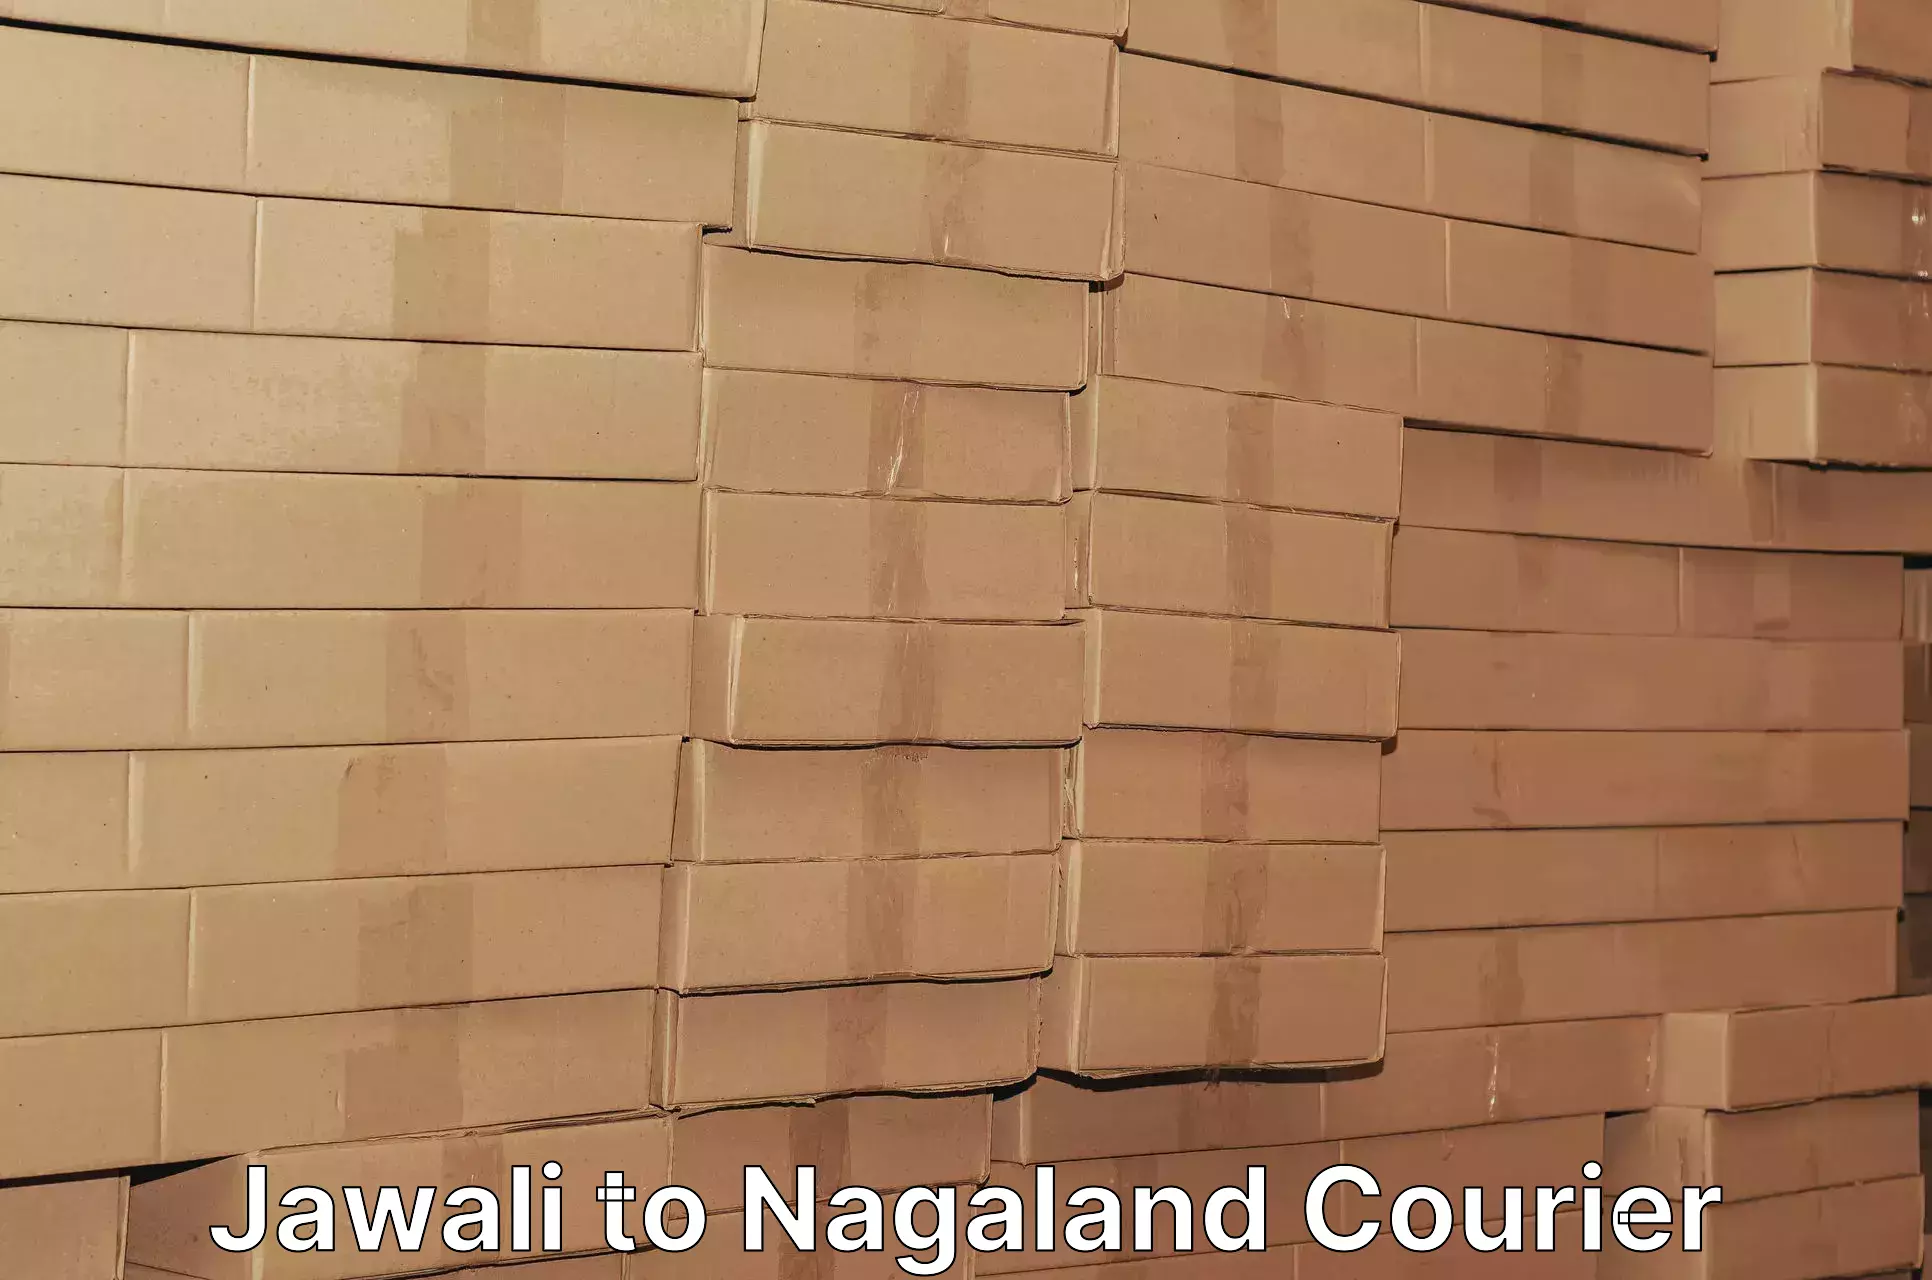 Door-to-door freight service Jawali to Nagaland